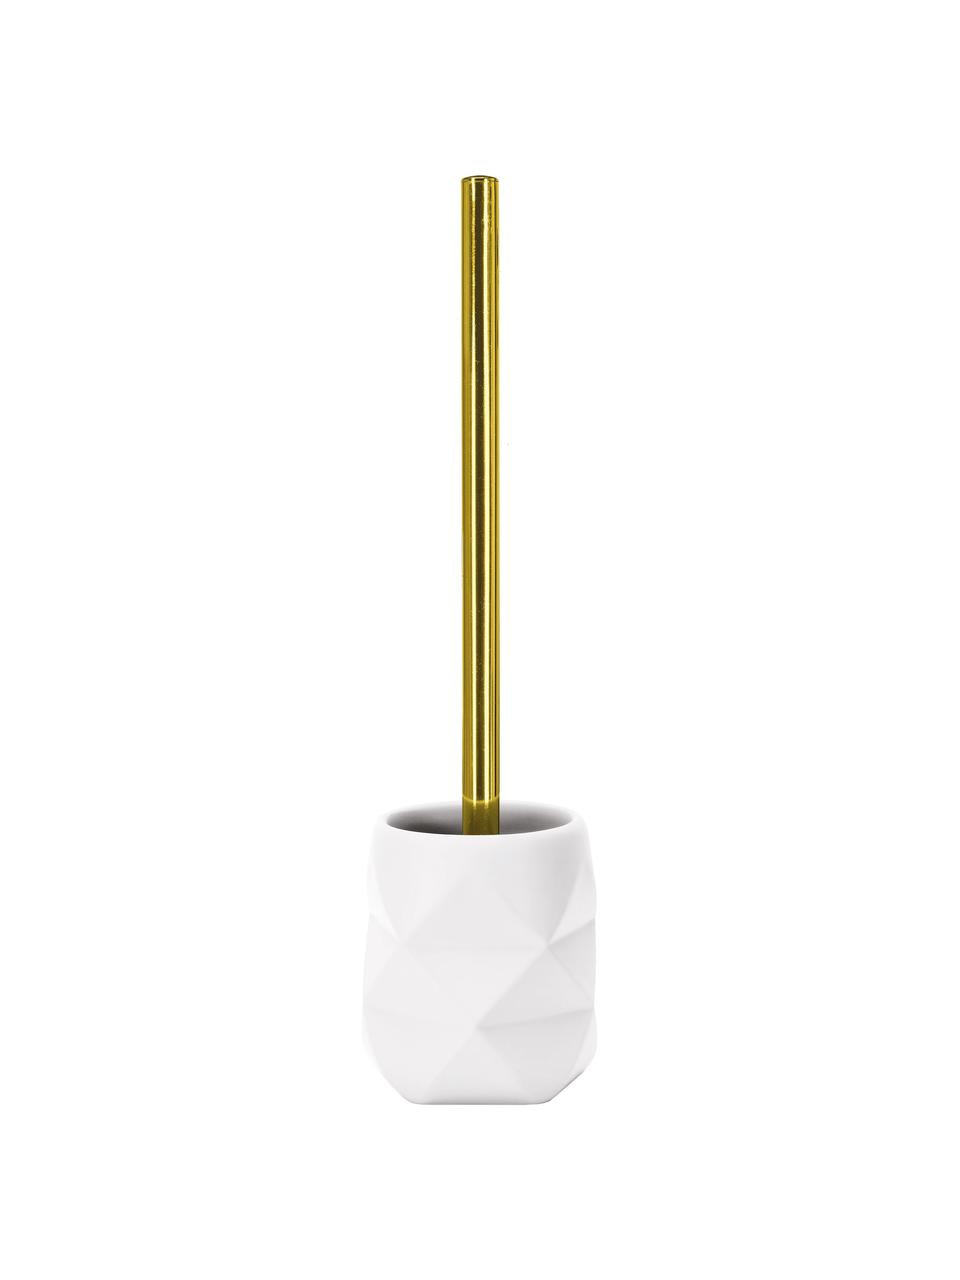 Toilettenbürste Crackle aus bruchfestem Polyresin, Halter: Polyresin, Weiß, Goldfarben, Ø 11 x H 39 cm